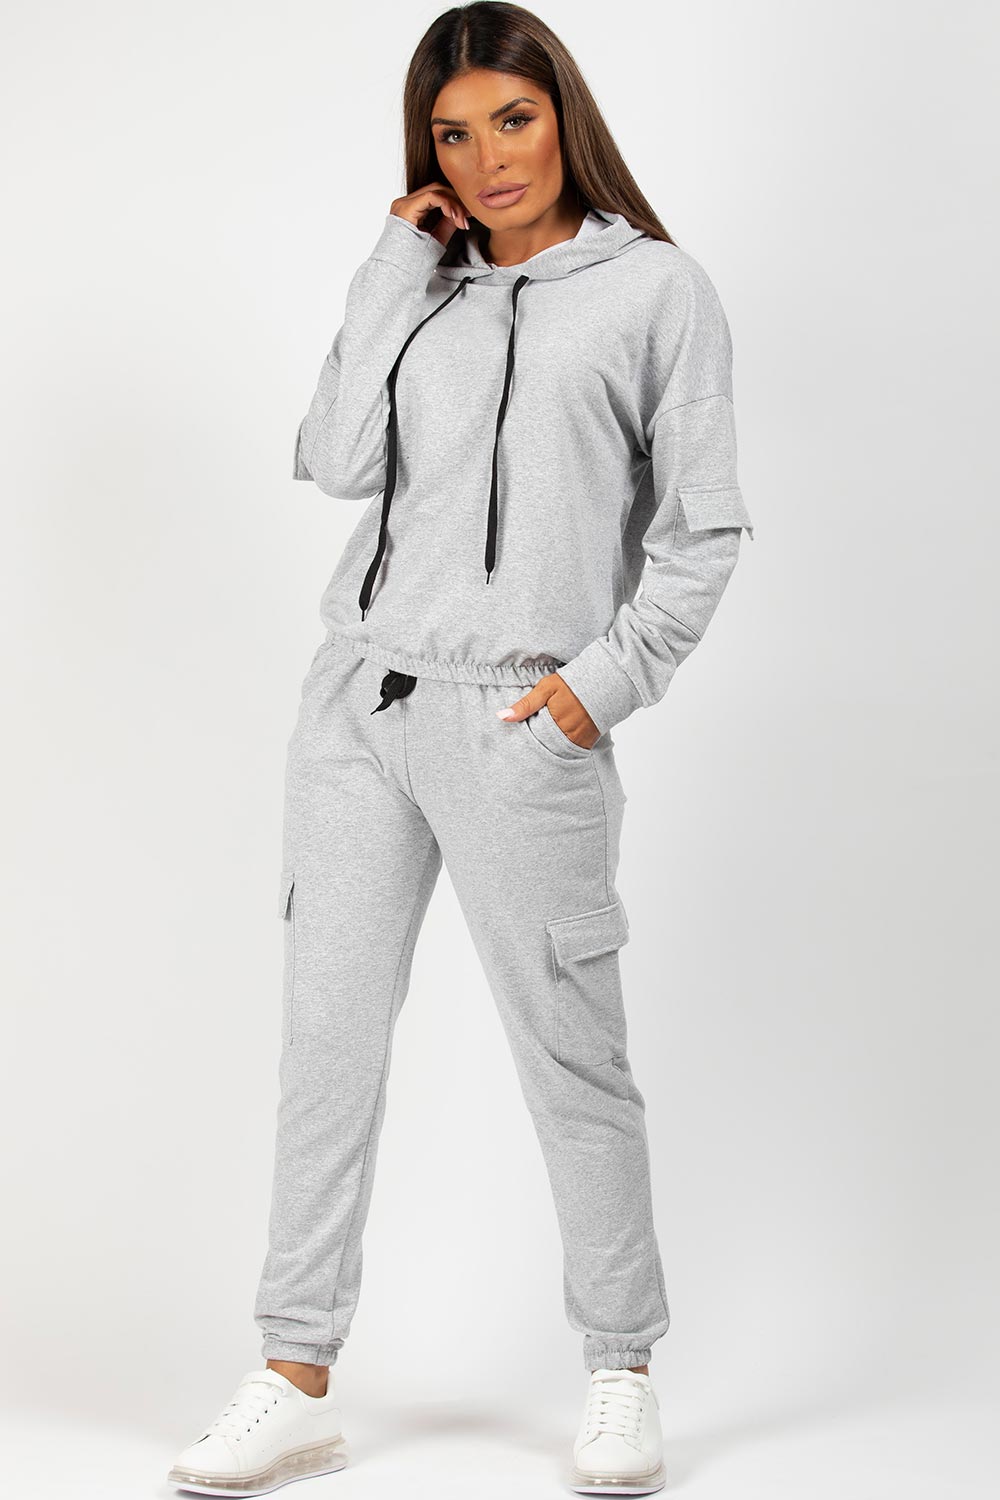 Oversized Hooded Loungewear Co-Ord Set – Styledup.co.uk